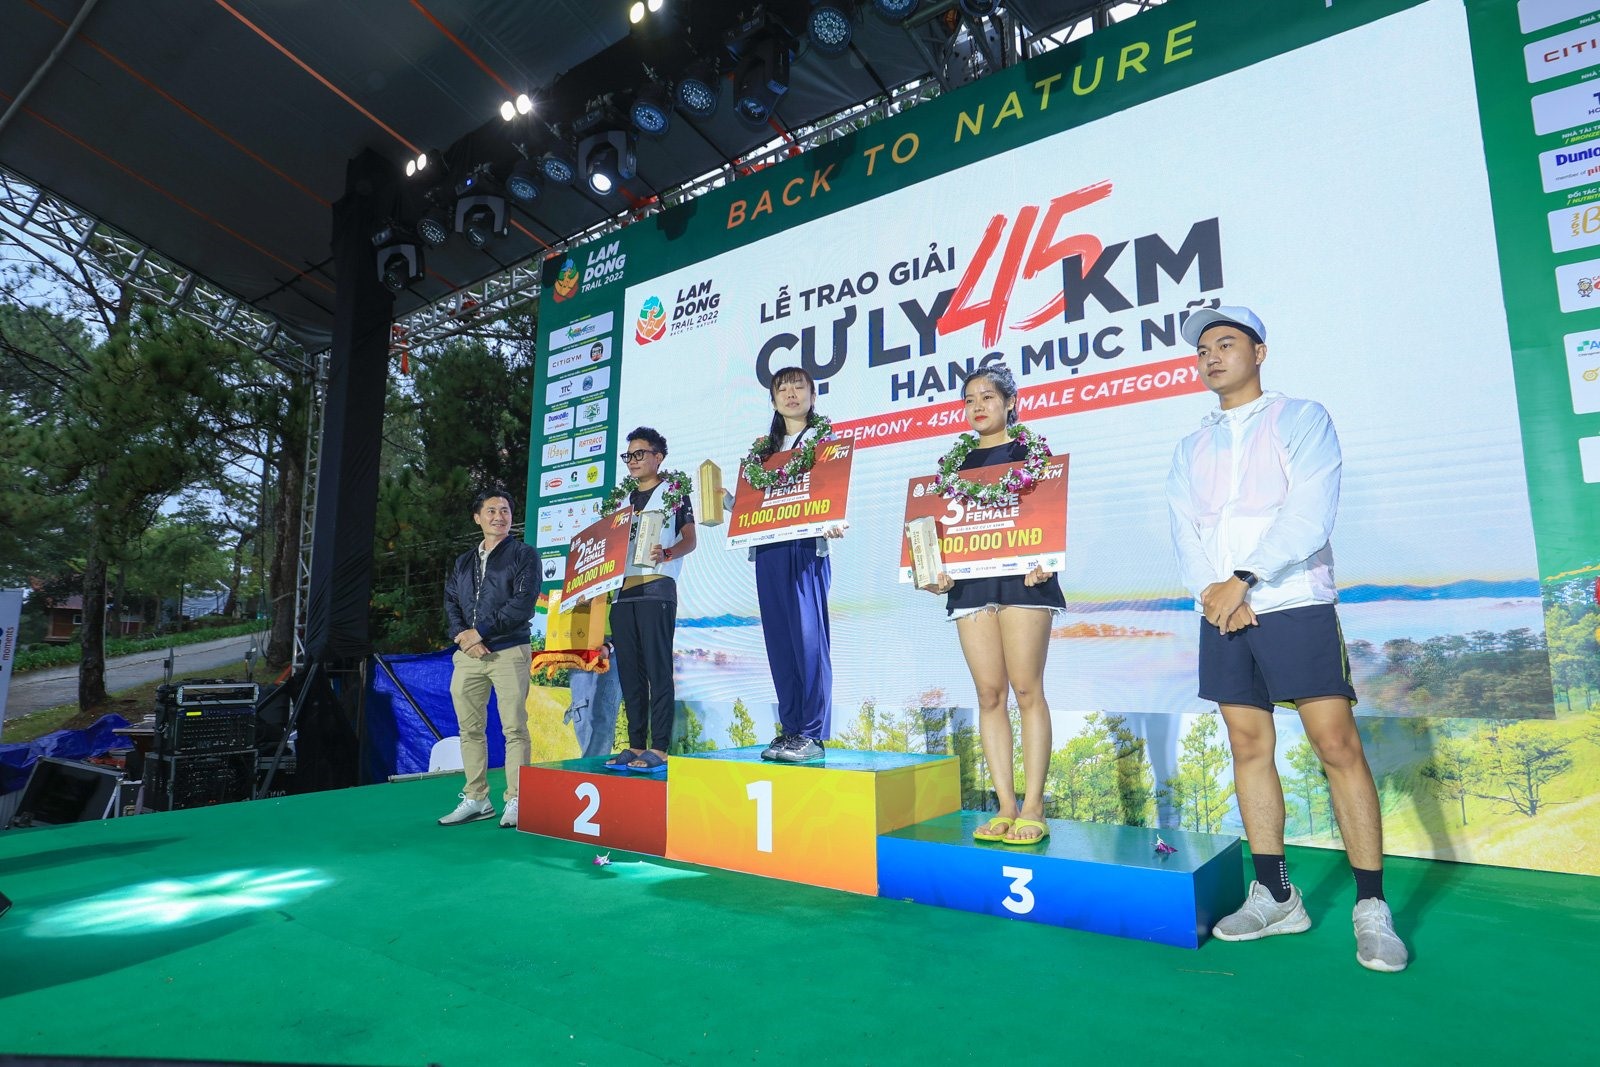 Nemoto Akane, runner 33 tuổi, người có thứ hạng cao trong các giải chạy marathon cũng đã có thành tích vượt trội khi dẫn đầu cự li 45km nữ với thành tích 6 giờ 9 phút 04 giây.